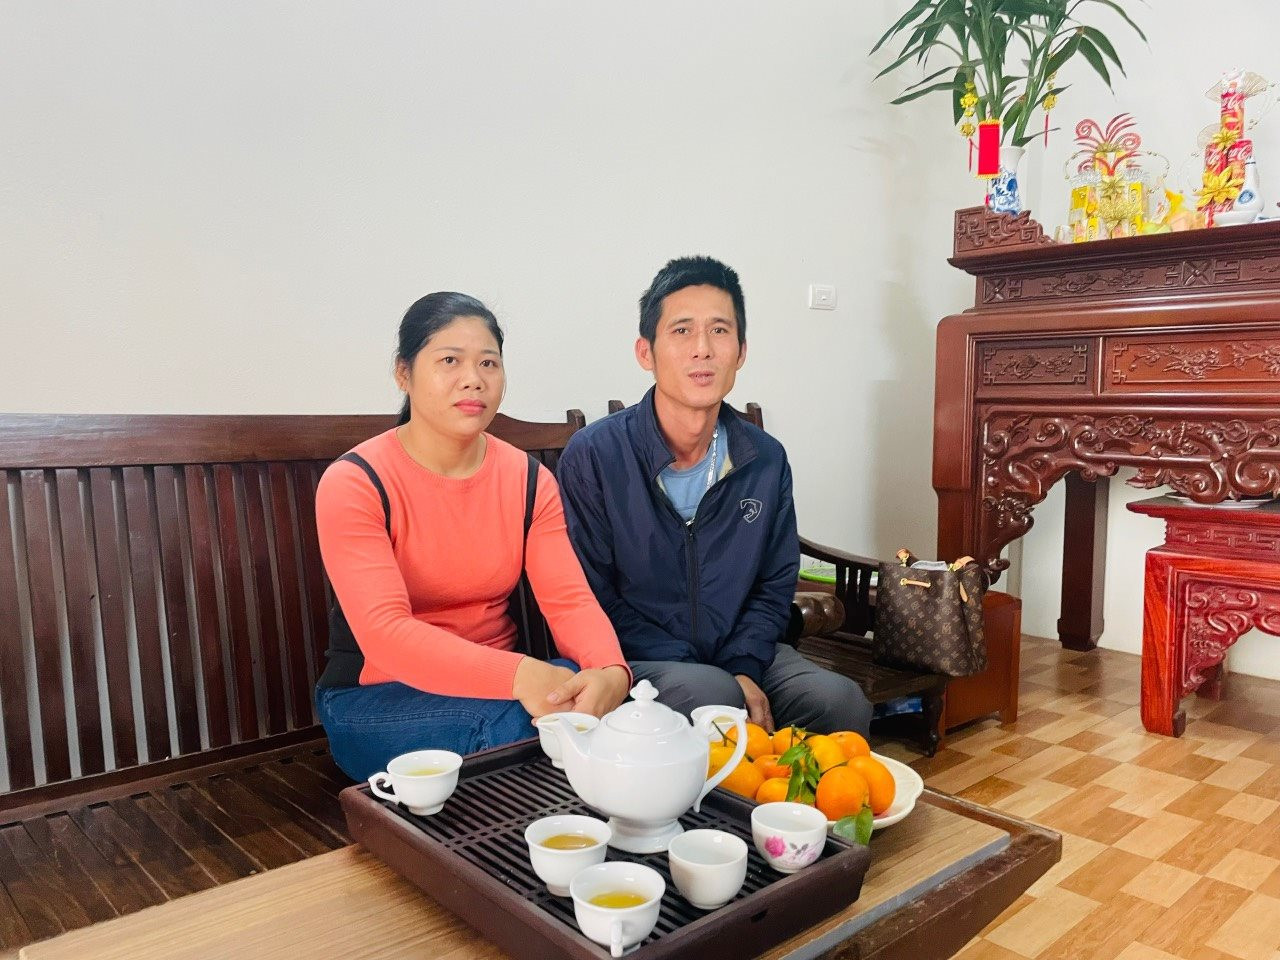 Phút thư thái của hộ gia đình ông Hoàng Xuân Tuấn và vợ (thôn Lê Xá, xã Mai Lâm, huyện Đông Anh) trong căn nhà được xây dựng từ nguồn kinh phí hỗ trợ thoát nghèo.